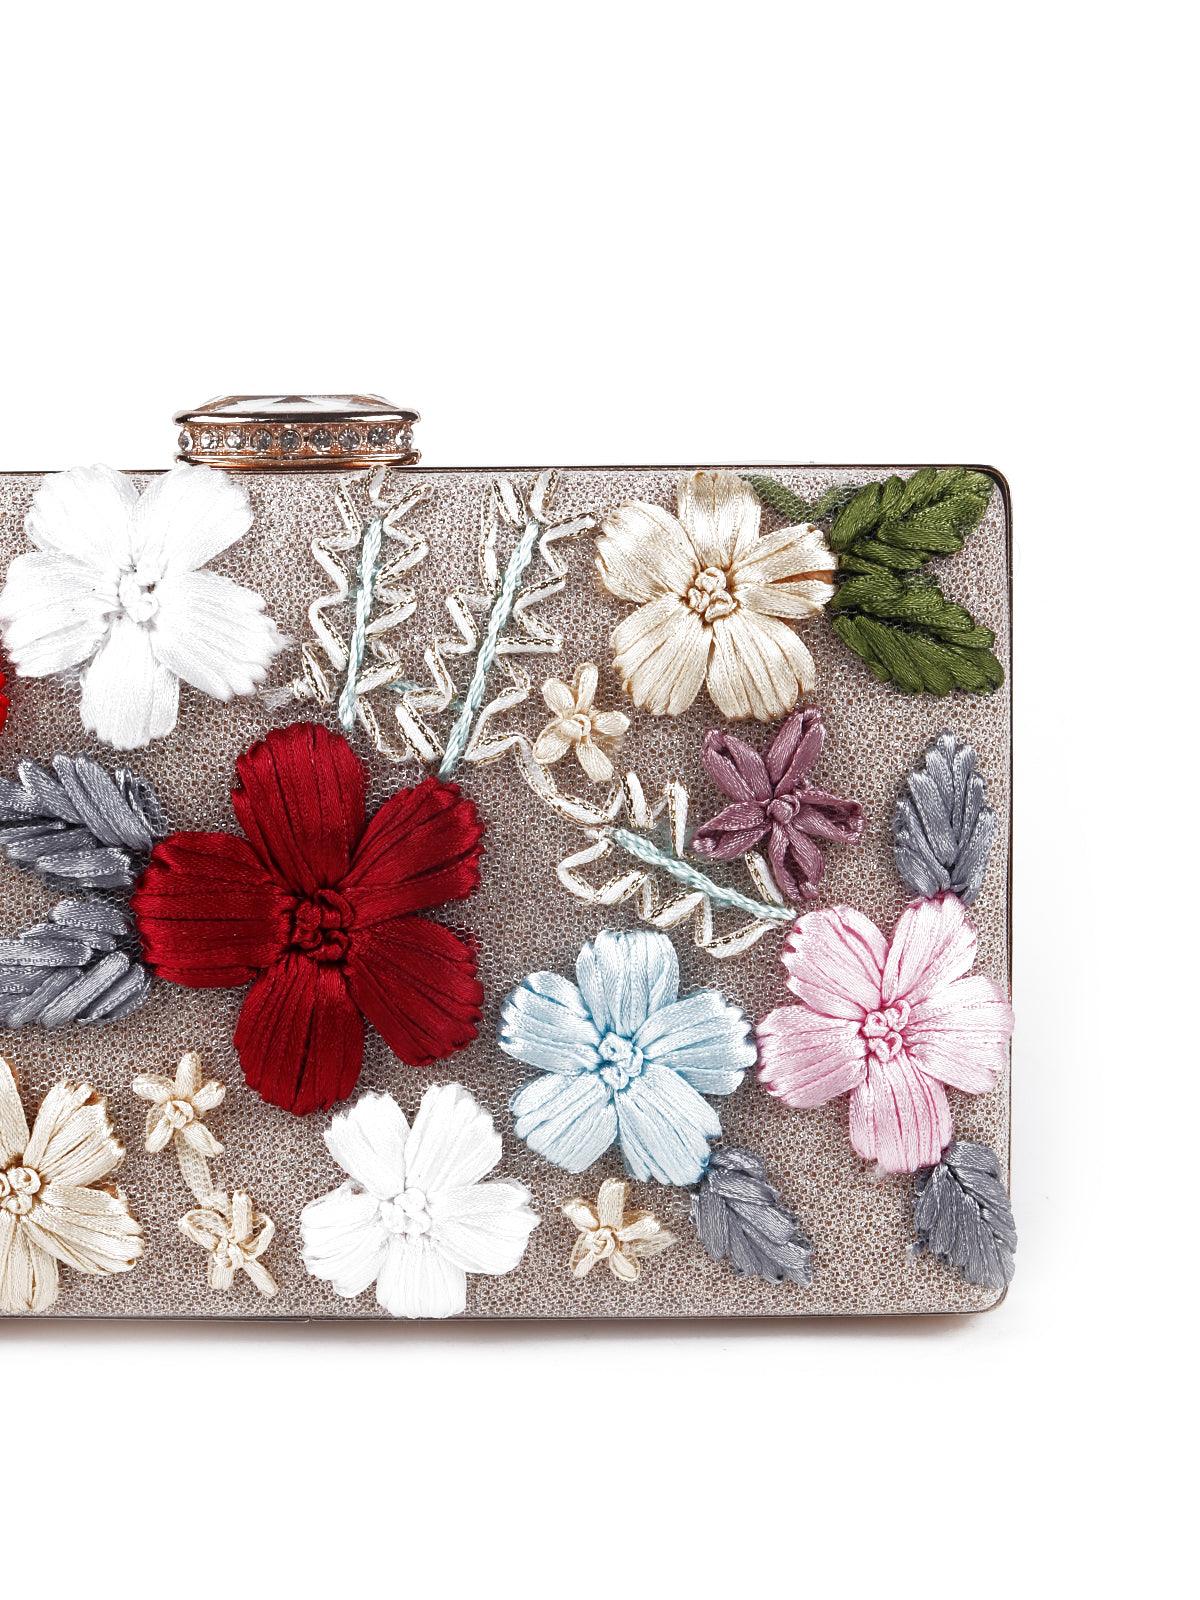 Multicoloured stunning floral box sling bag - Odette